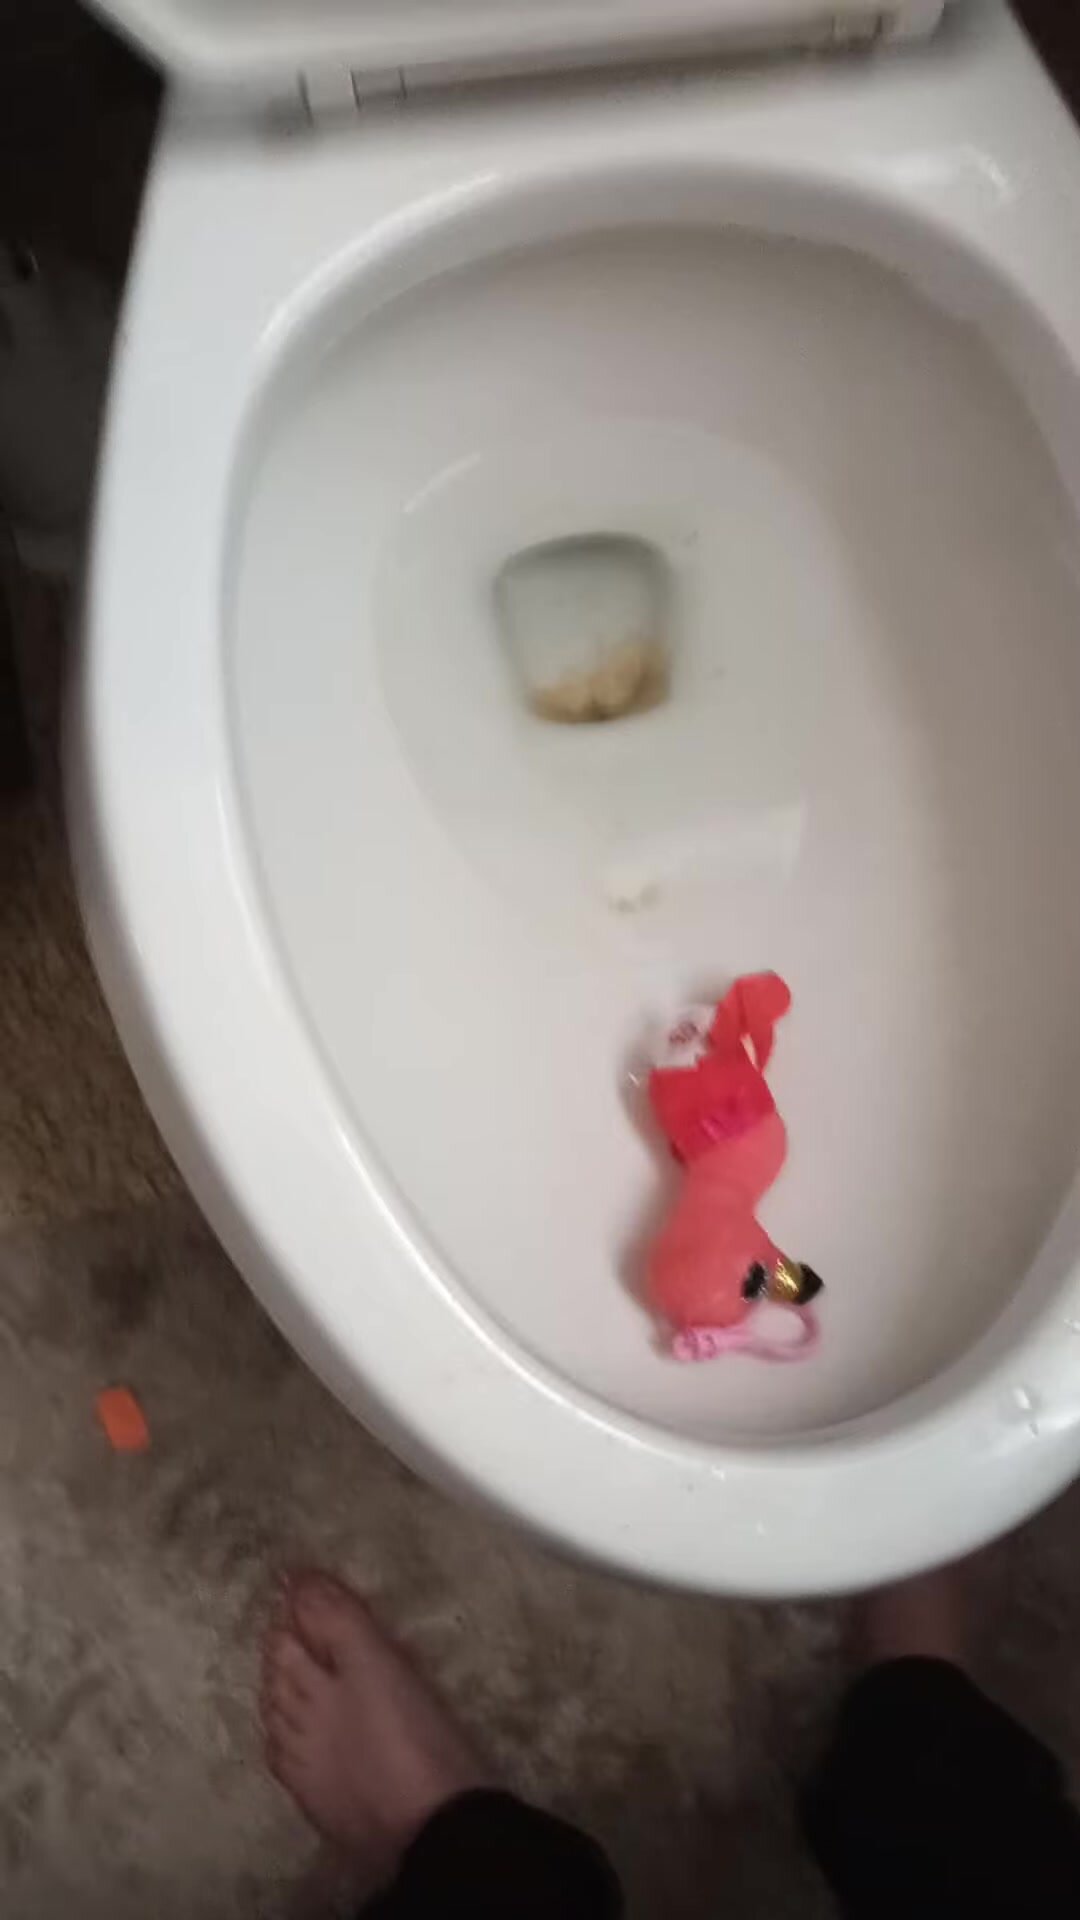 Flamingo Plushie Flushed Down Toilet